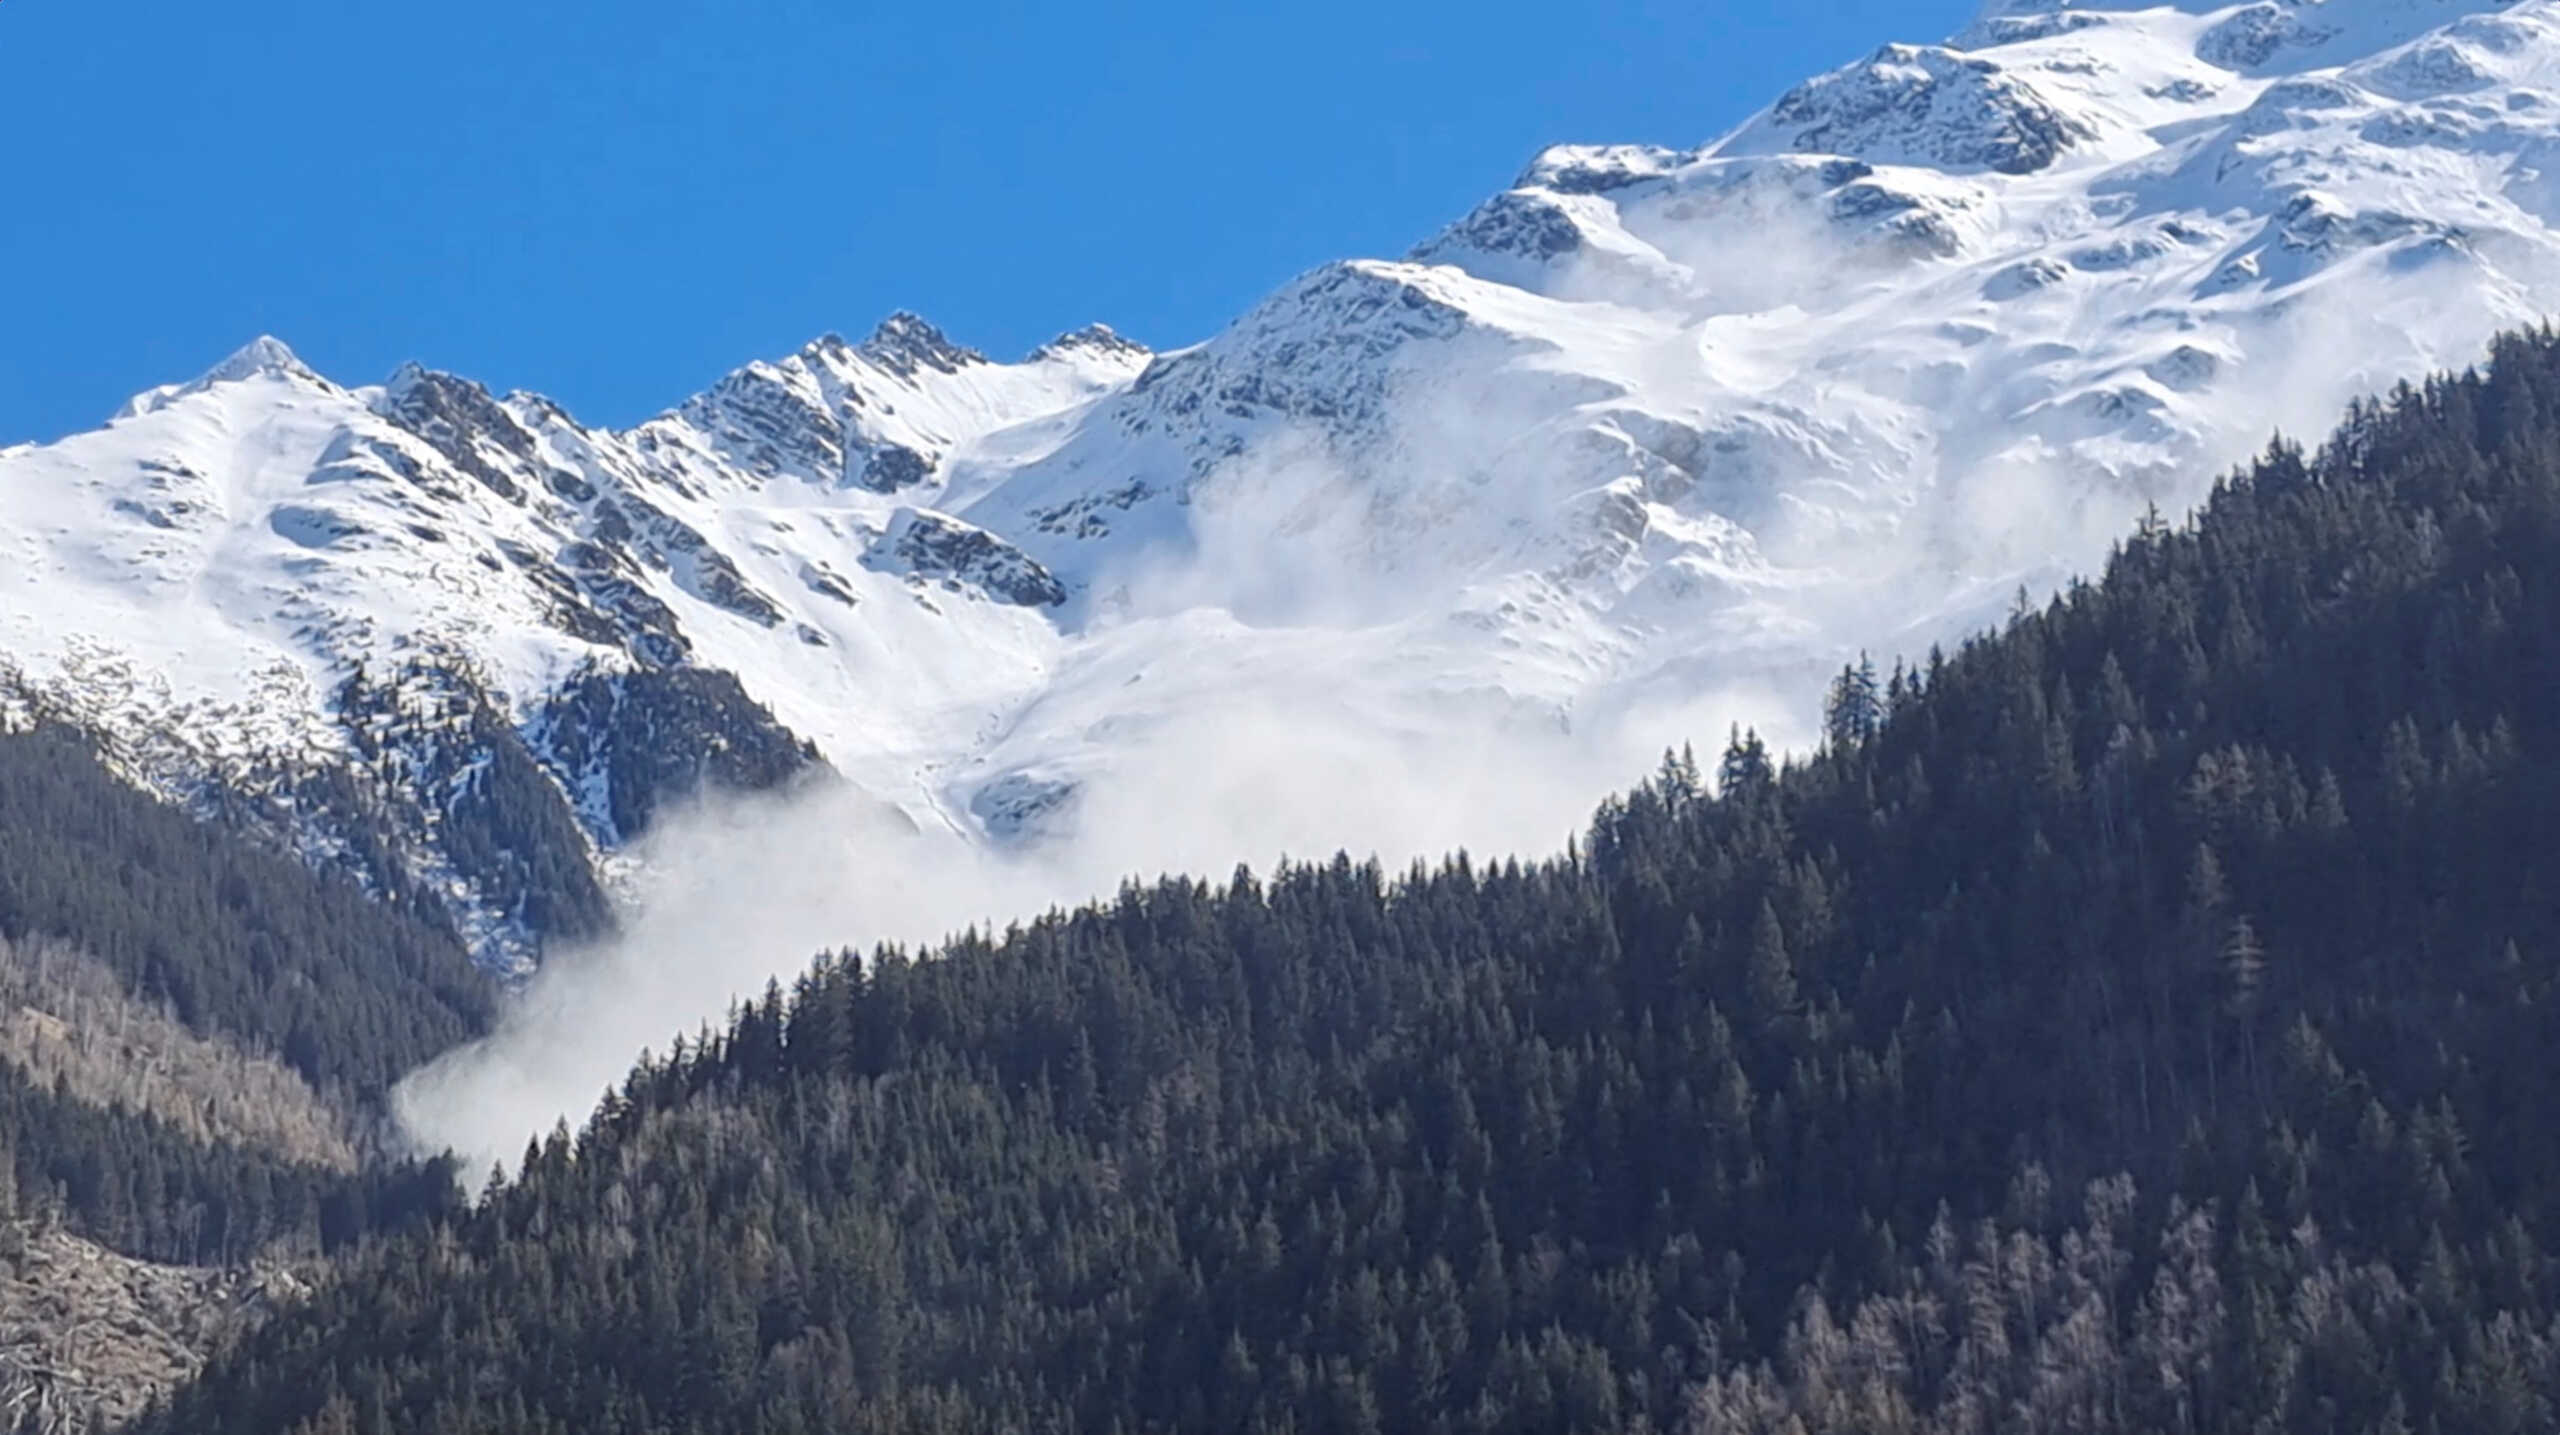 Αυστρία: 3 Ολλανδοί τουρίστες νεκροί από χιονοστιβάδα στις Άλπεις, στην περιοχή του Τιρόλο